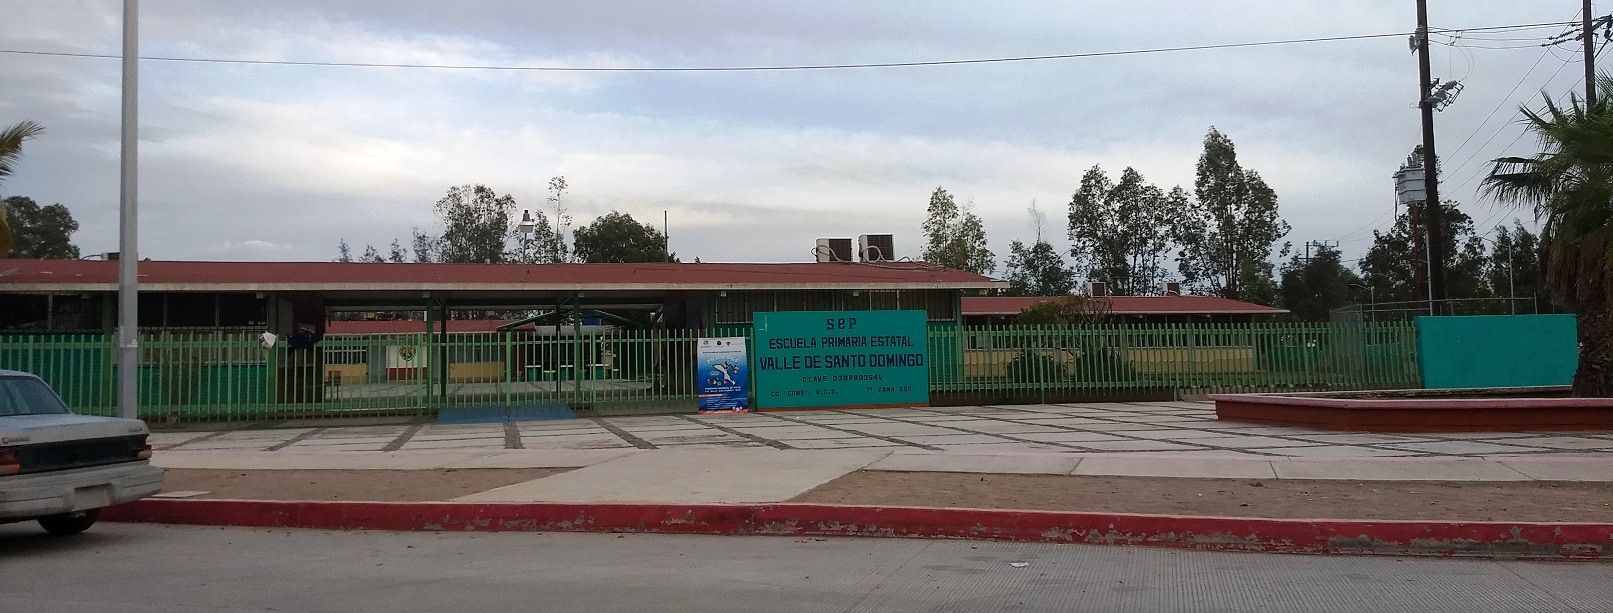 Escuela Primaria Valle de Santo Domingo, la visitaron los Delincuentes